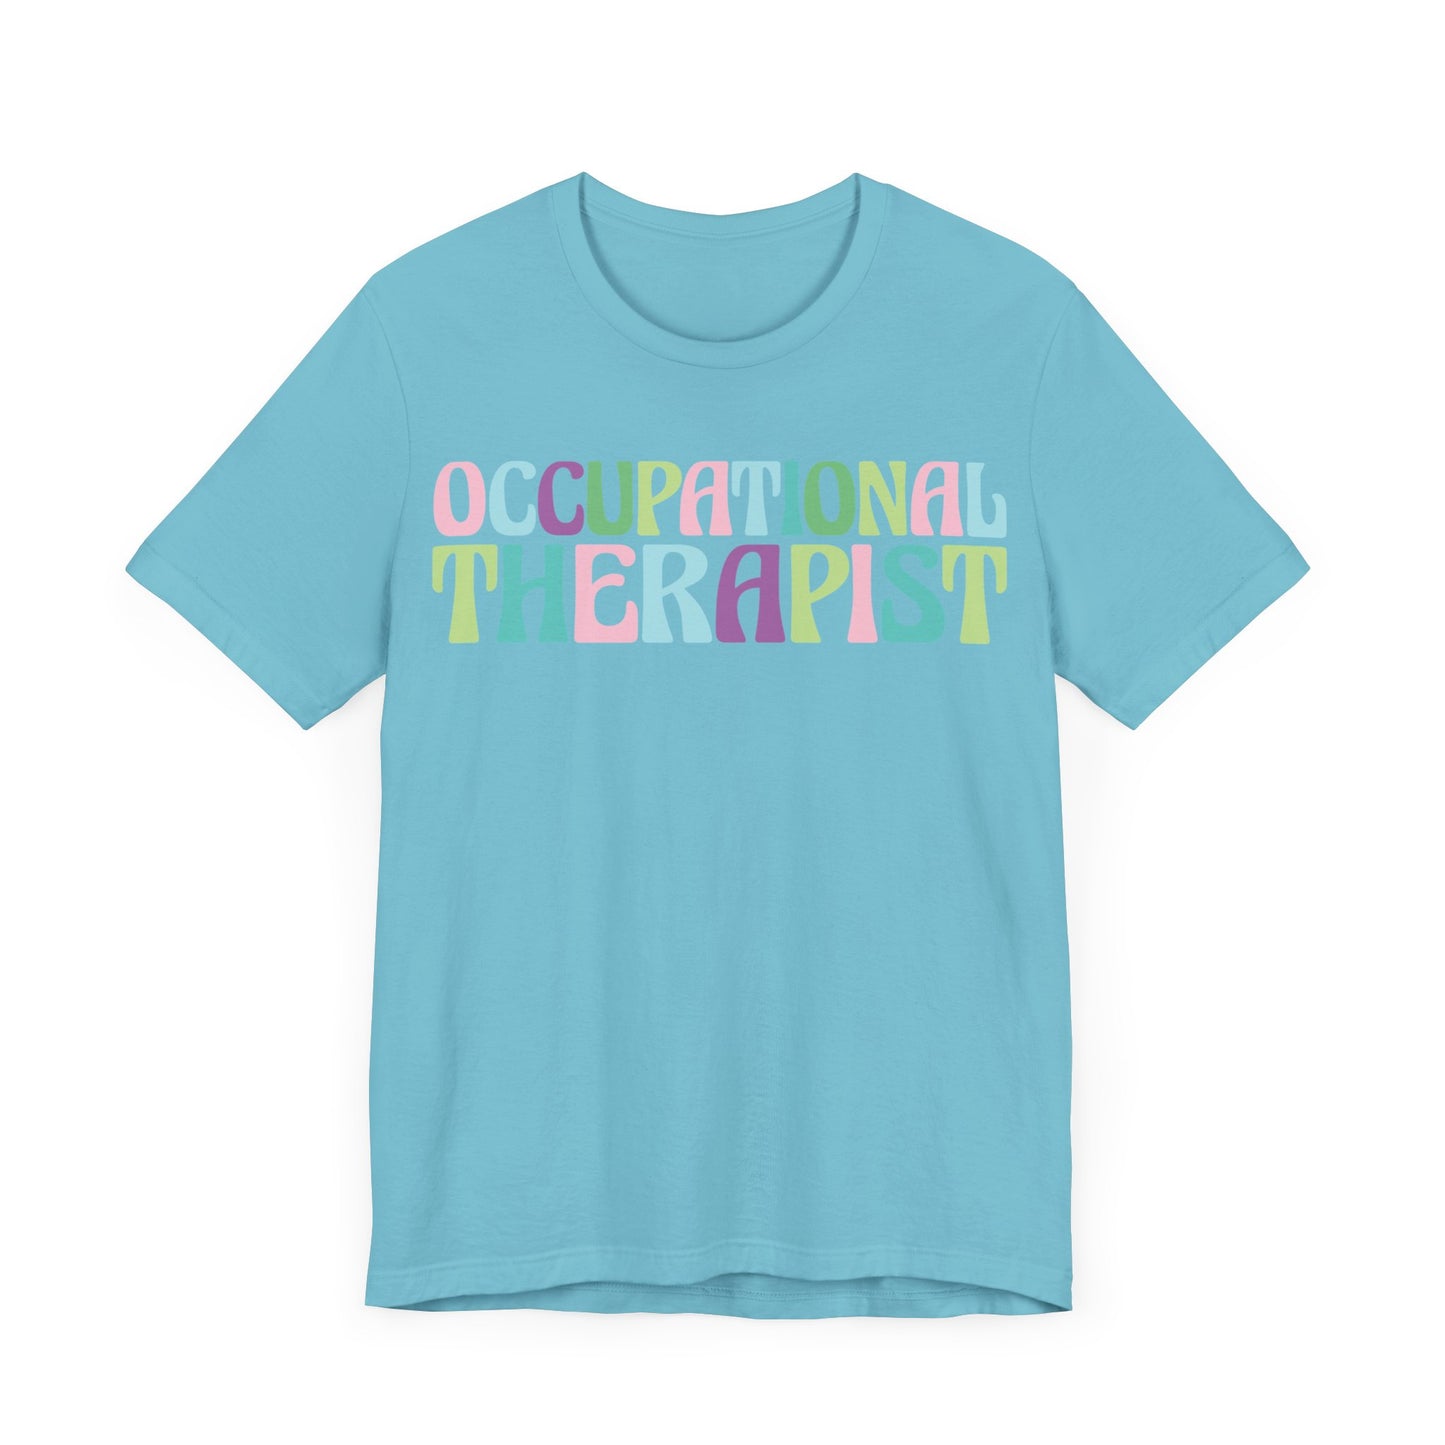 Occupational Therapist Melody Shirt, OT Shirt, Therapist Shirt